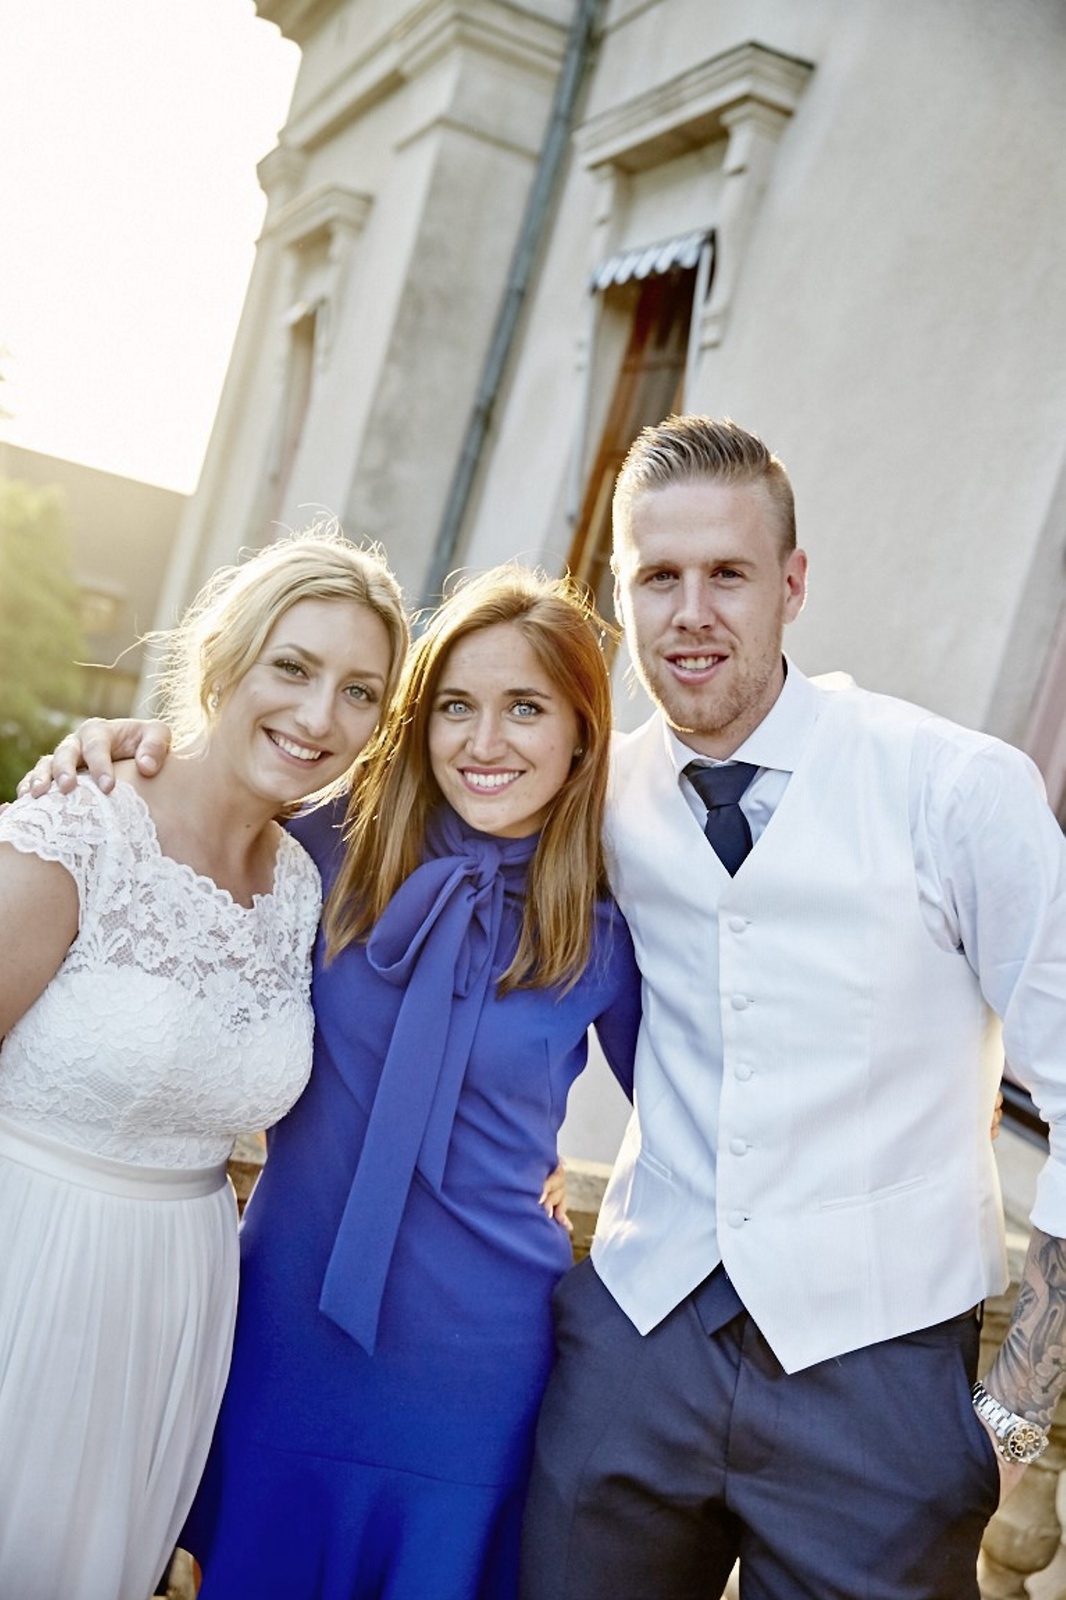 Johanna Kajson, i mitten, planerade Åsa Thornells och fotbollsproffset Pontus Janssons bröllops i midsomras.
Foto: tobias lagerholm